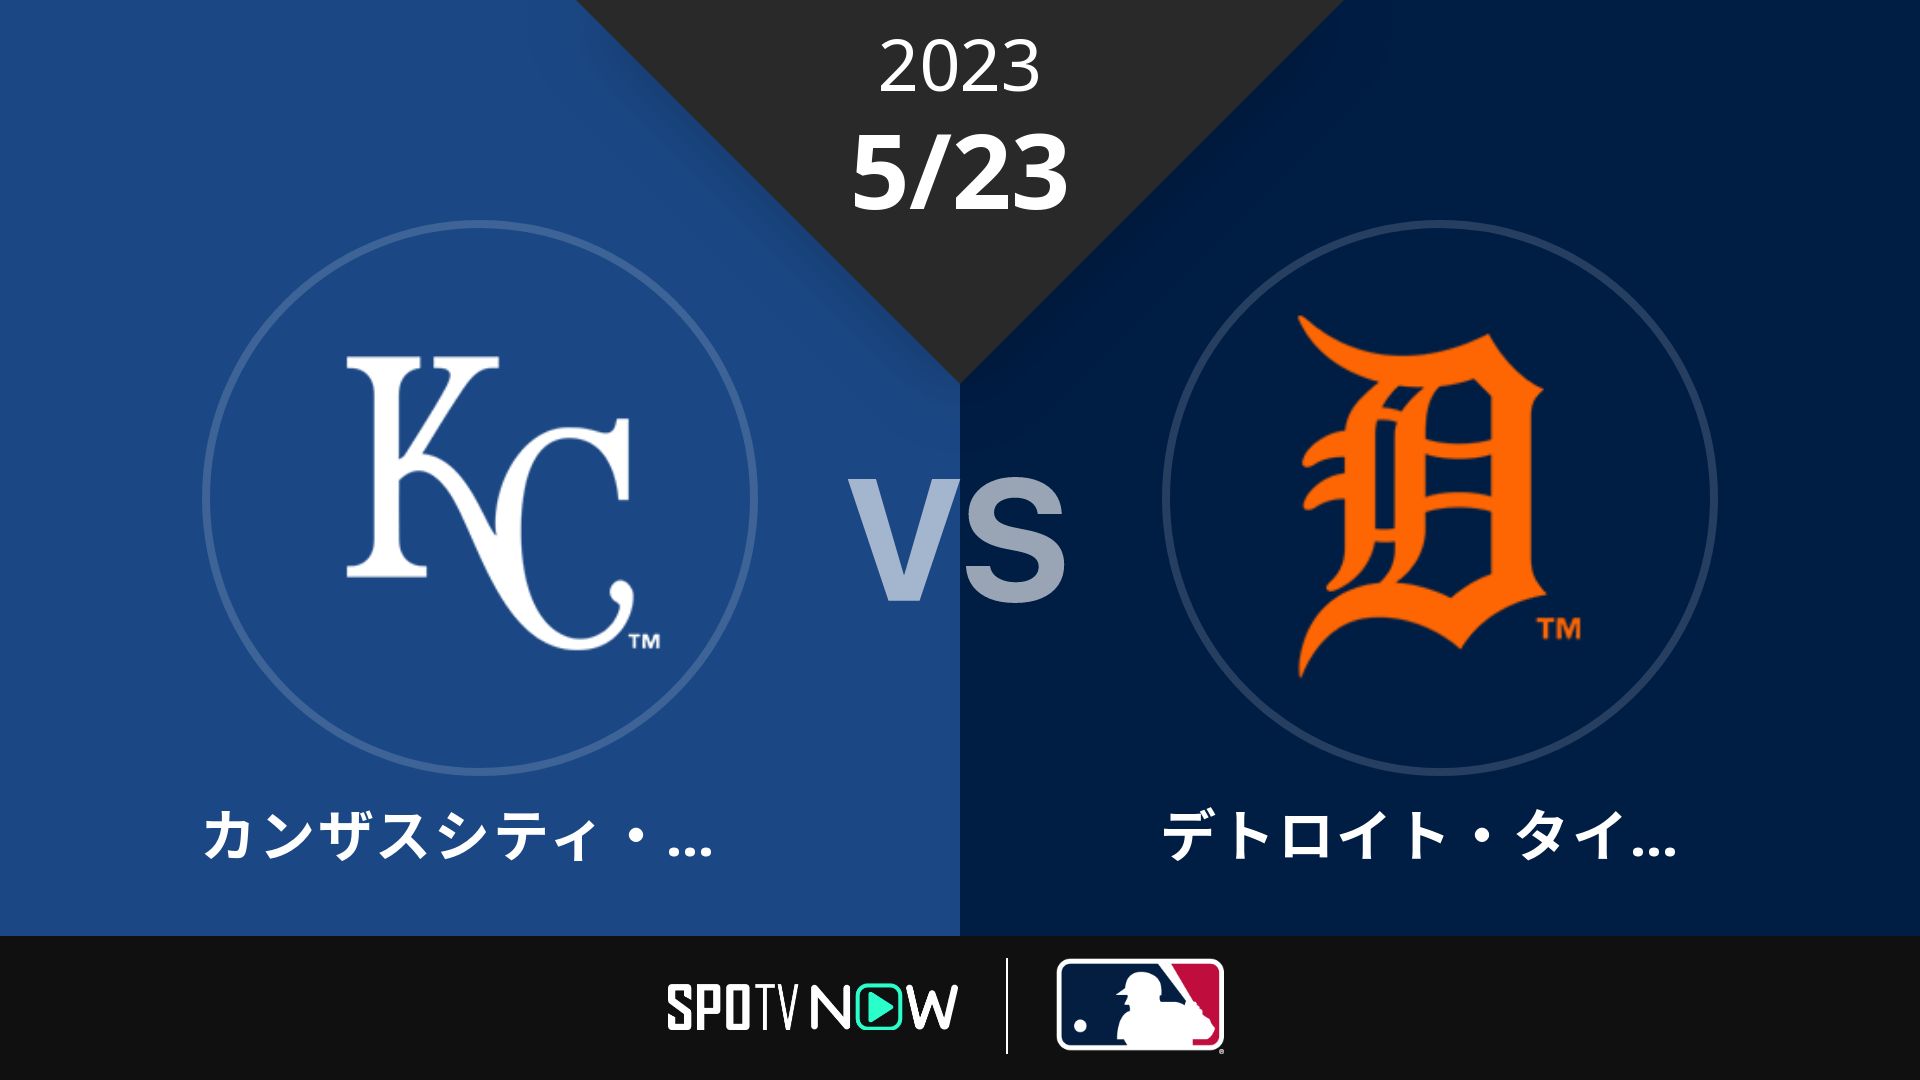 2023/5/23 ロイヤルズ vs タイガース [MLB]